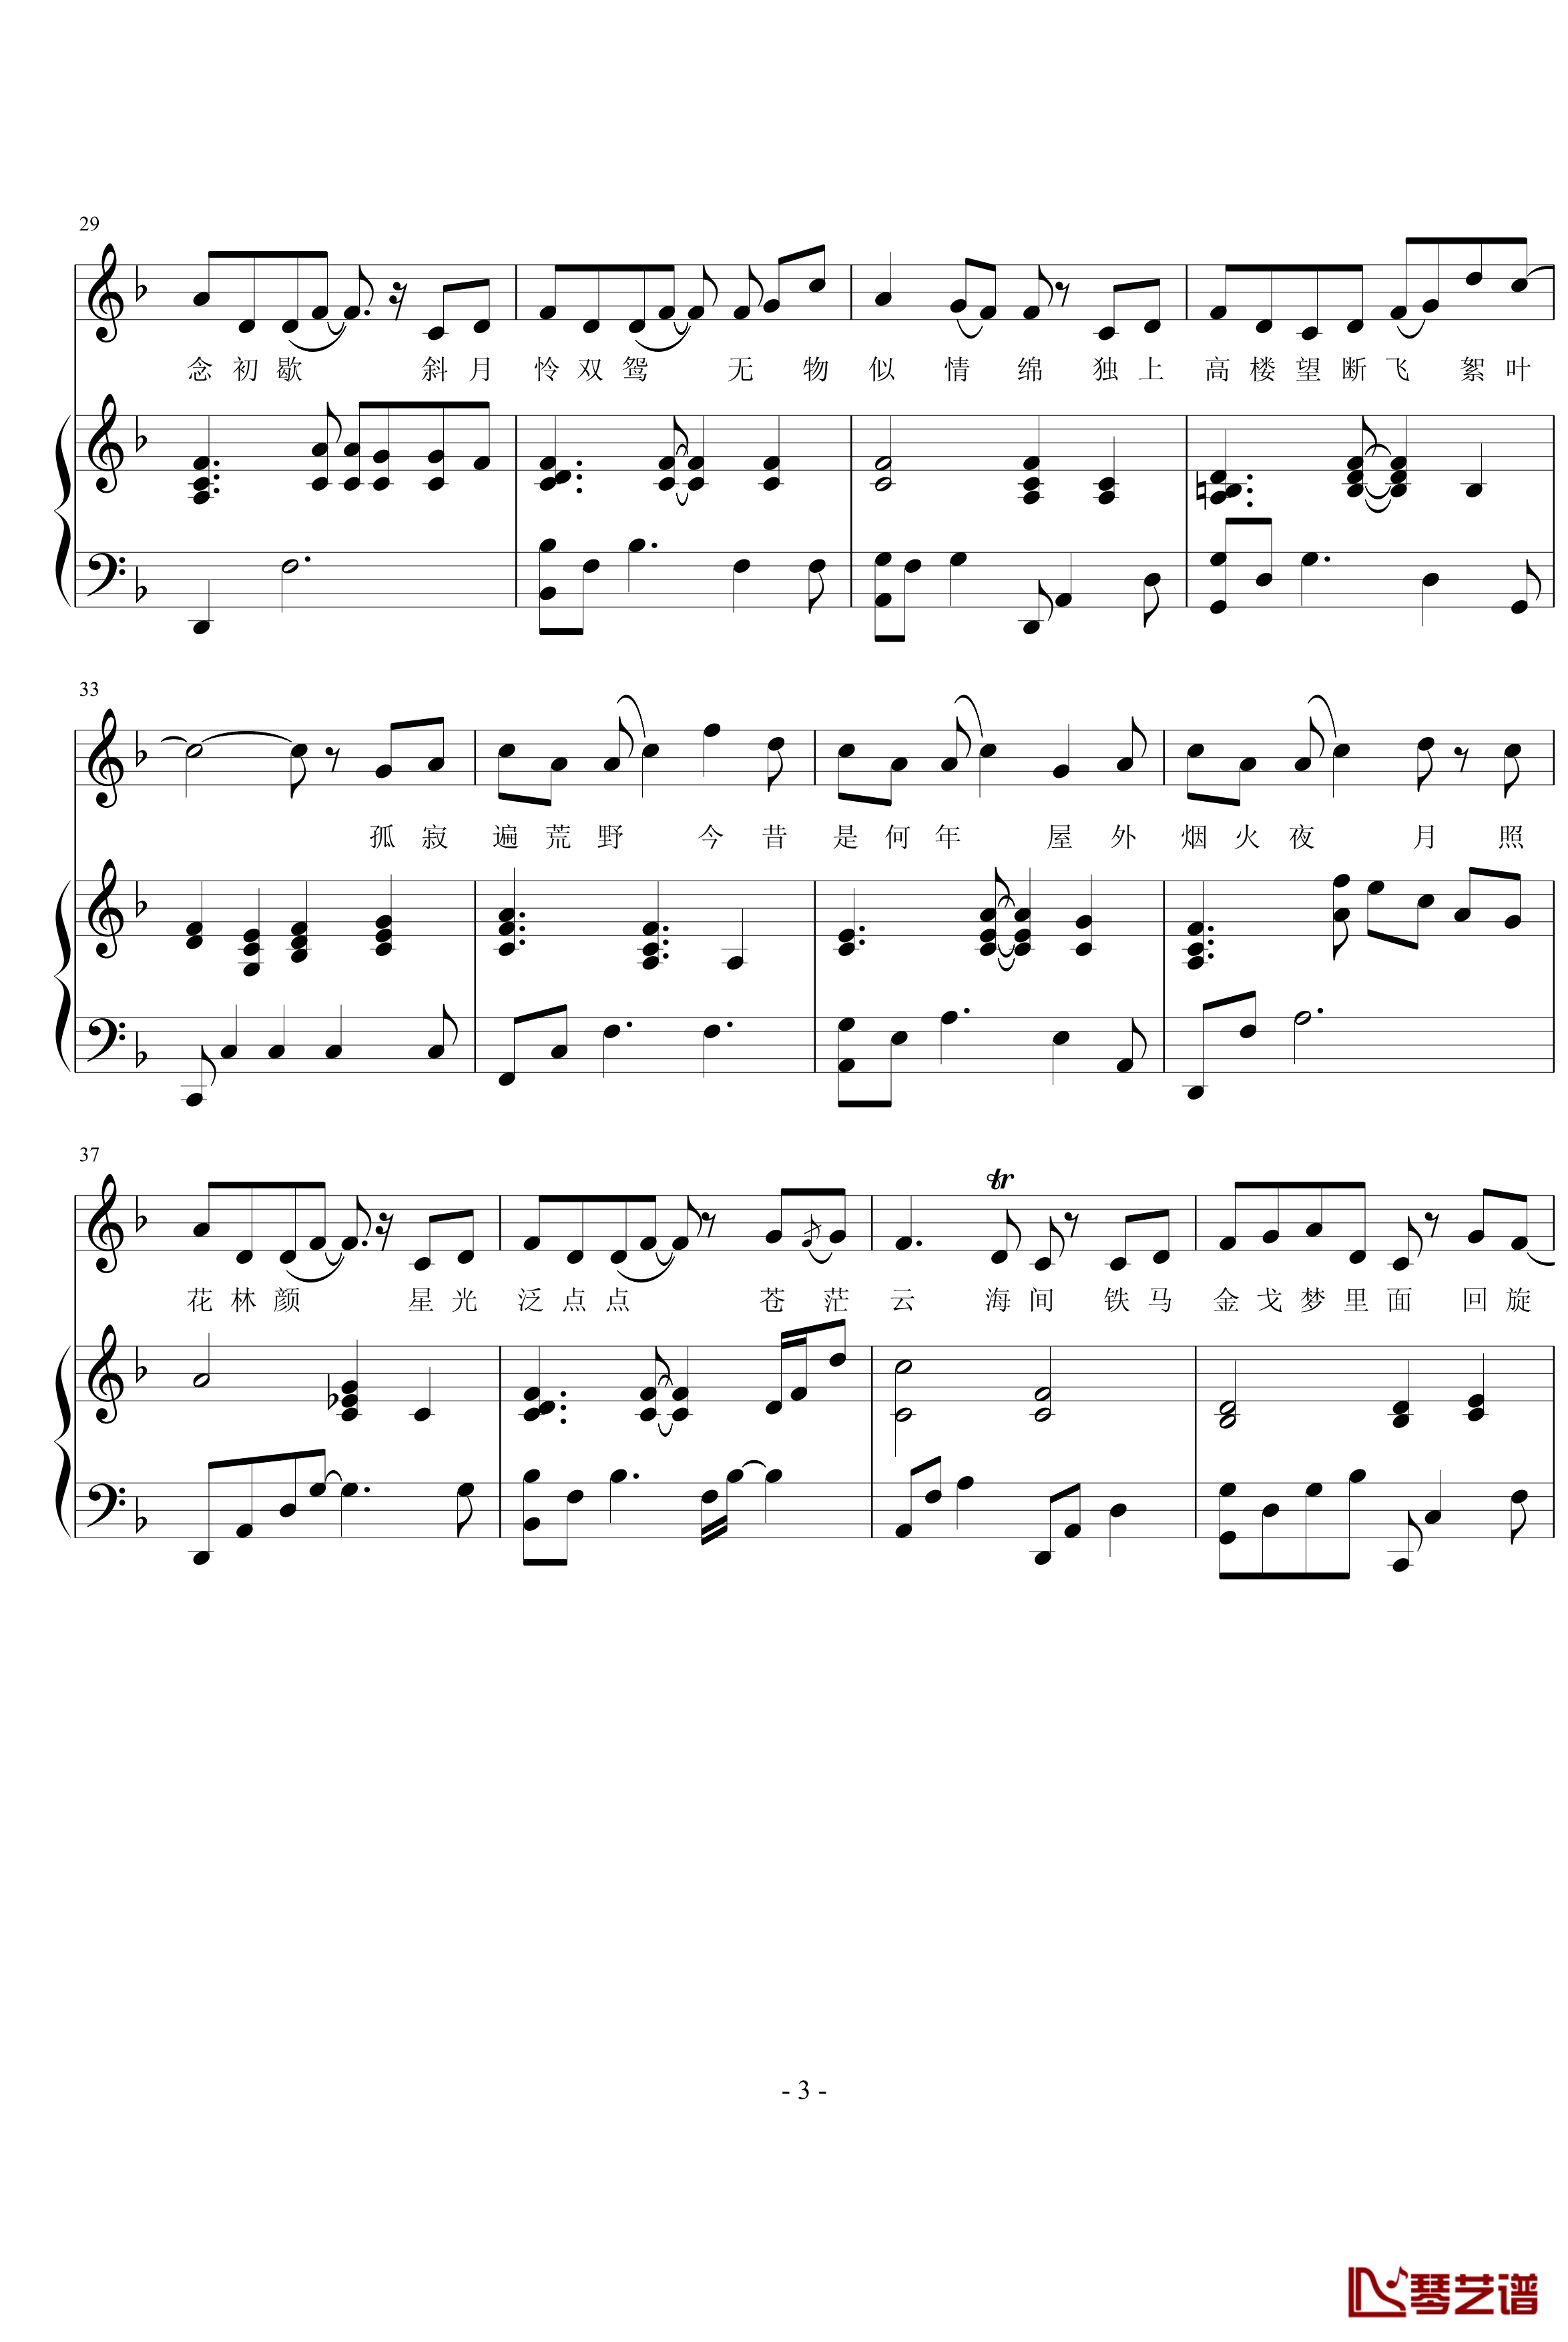 斜马灯钢琴谱-钢琴弹唱-试听在左边-daerwill3